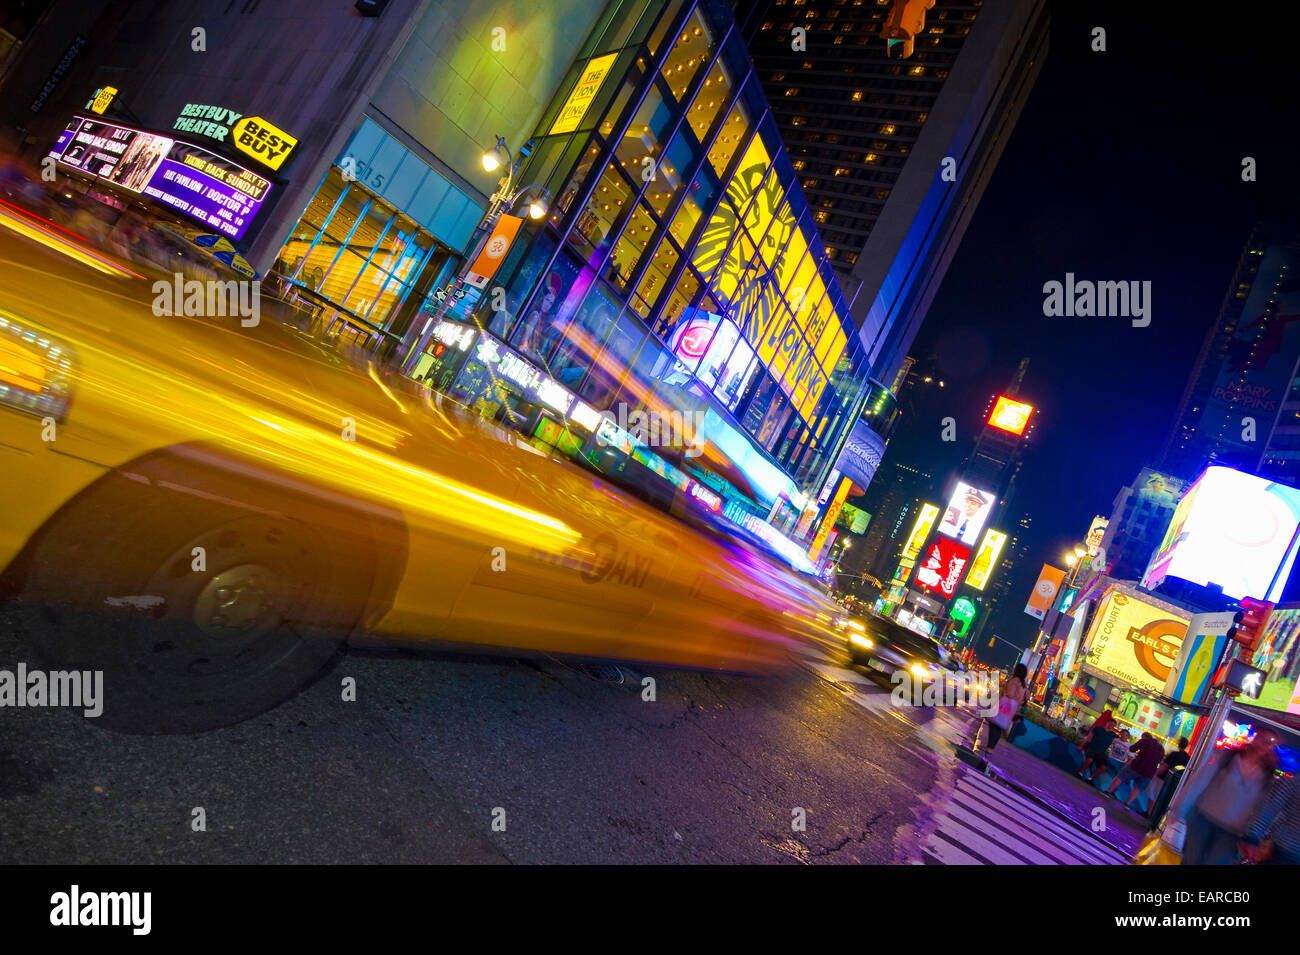 Leuchtreklamen und ein Taxi mit Motion blur in Times Square, Manhattan, New York City, New York, Vereinigte Staaten von Amerika Stockfoto